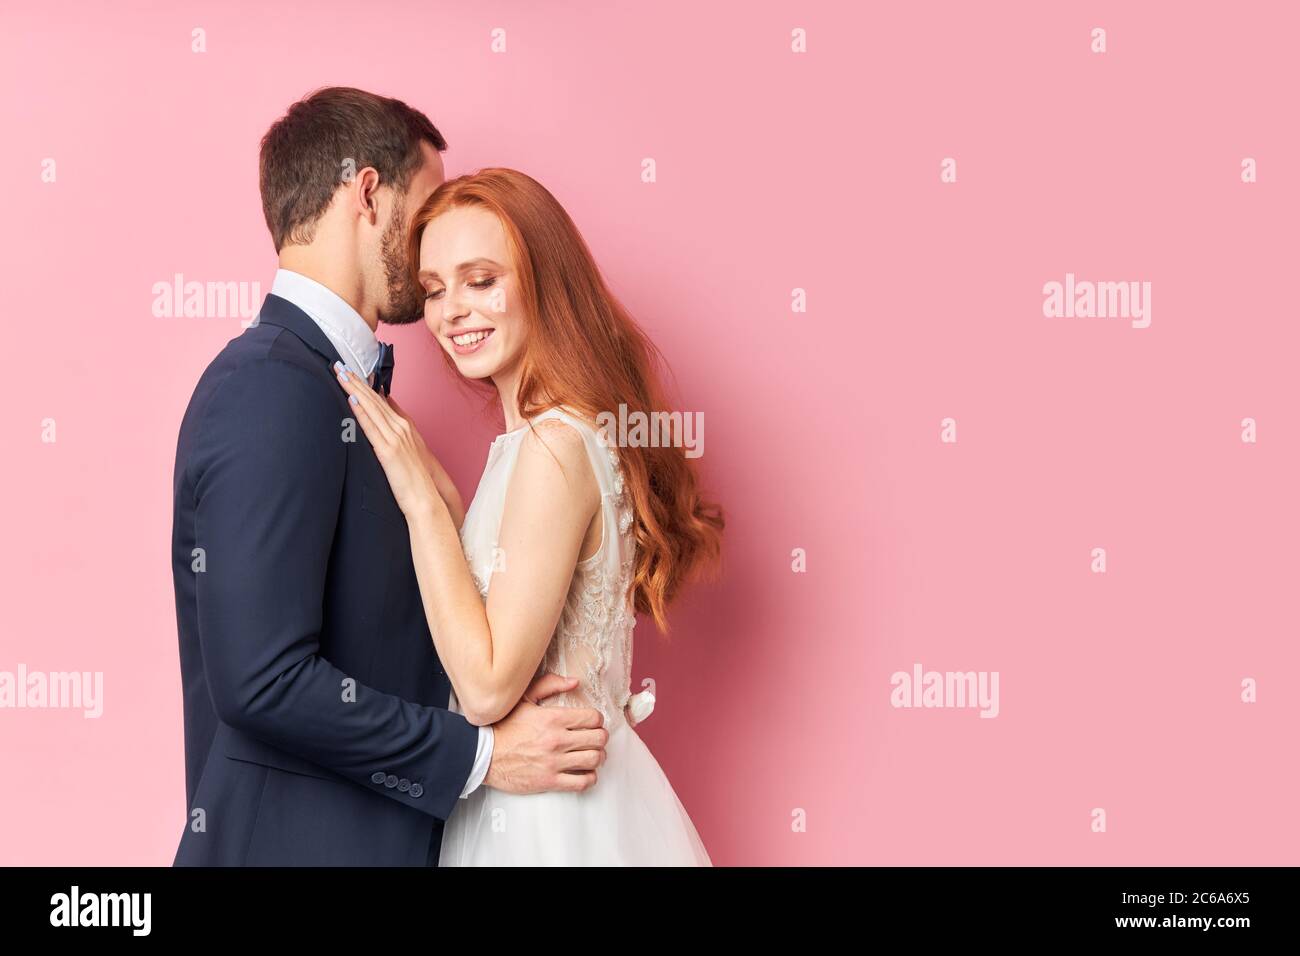 Schöne Frau mit roten Haaren umarmt ihren Verlobten in eleganten Anzug küssen sie. Glückliche junge Familie, Liebeskonzept Stockfoto